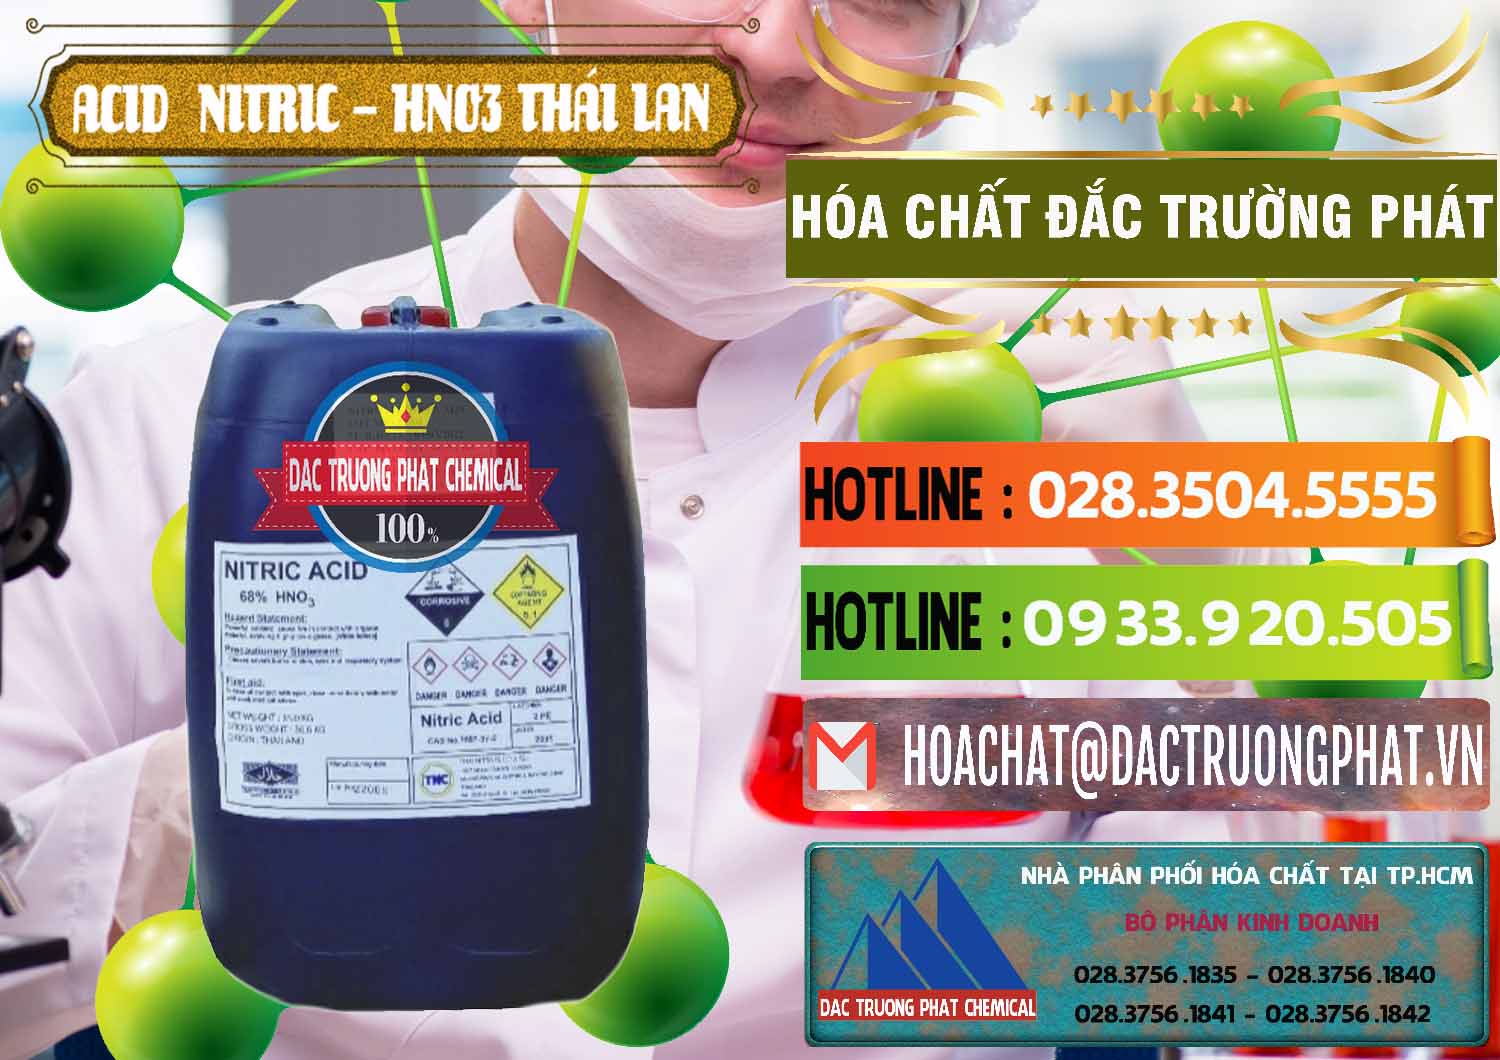 Cty bán _ cung cấp Acid Nitric – Axit Nitric HNO3 Thái Lan Thailand - 0344 - Nơi chuyên nhập khẩu - phân phối hóa chất tại TP.HCM - cungcaphoachat.com.vn